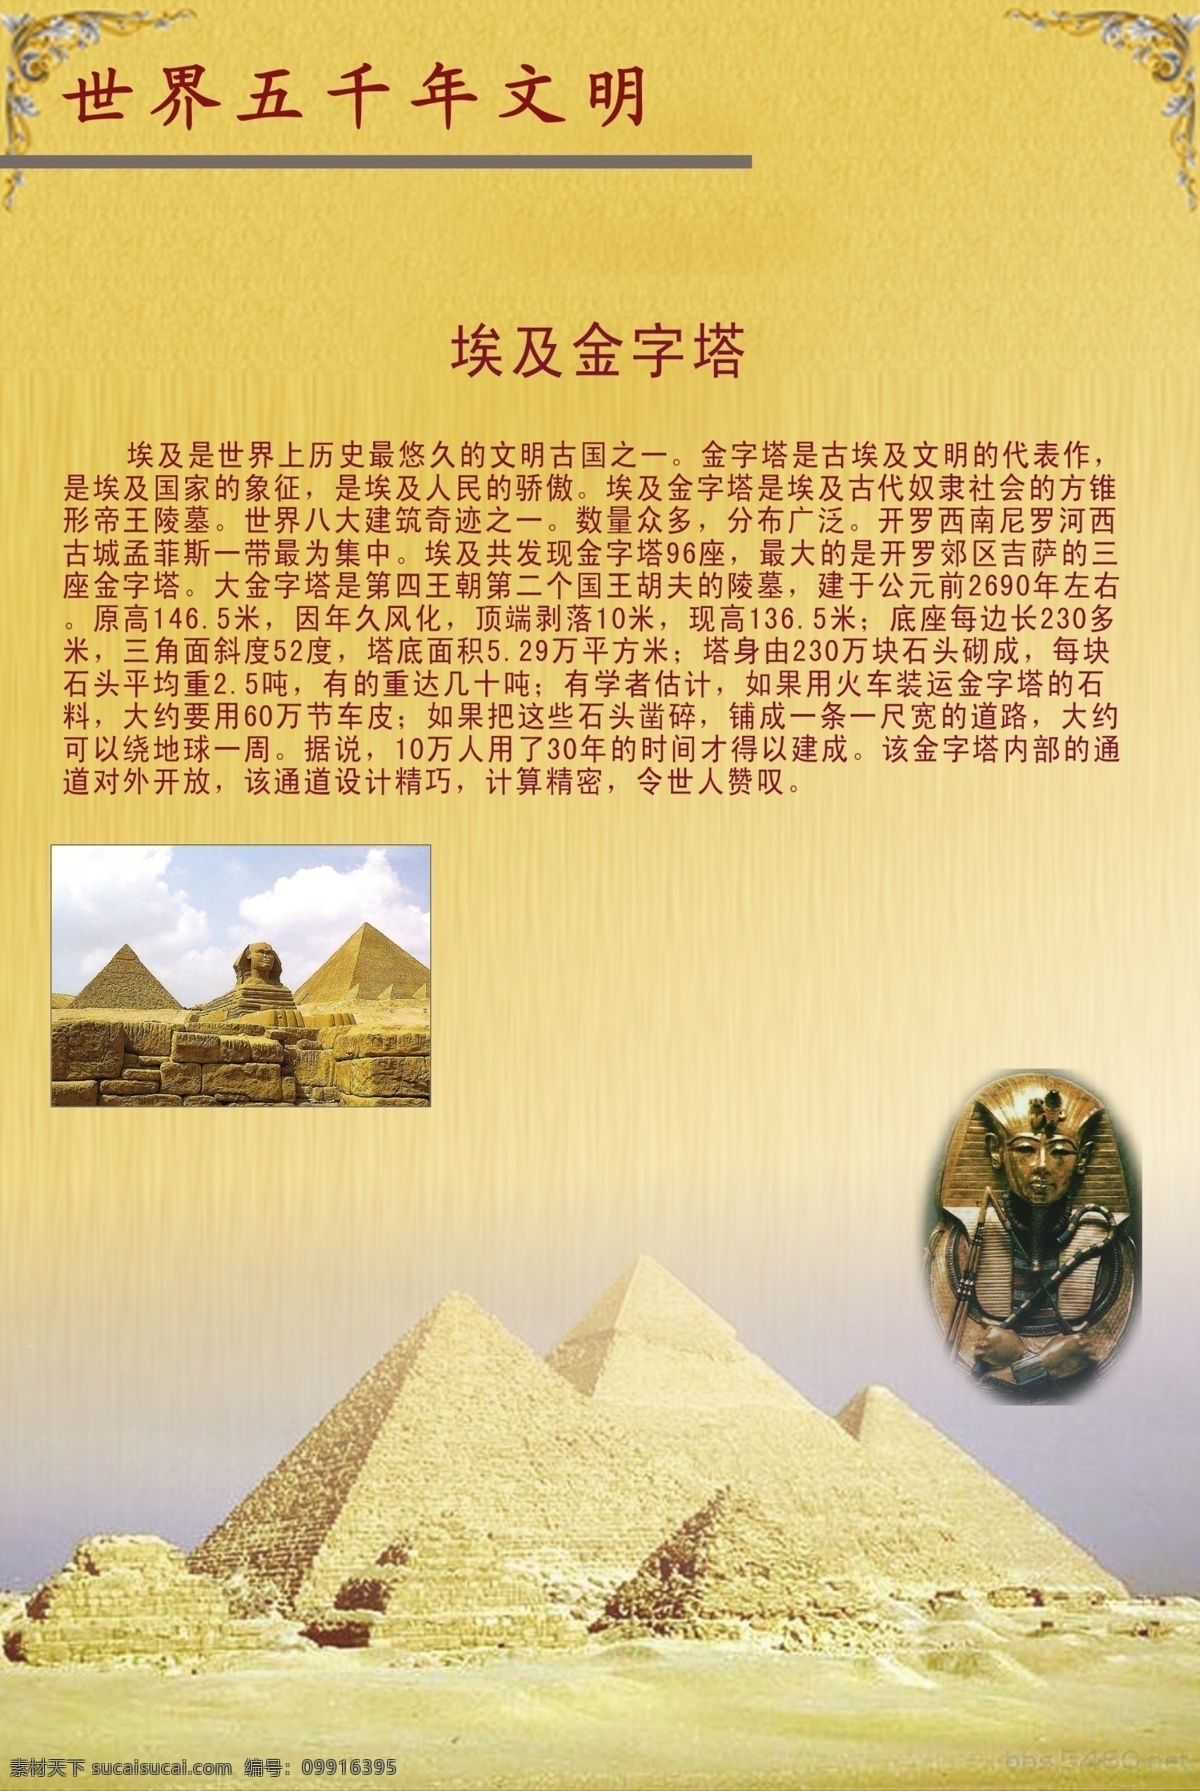 世界 五 千年 文明 埃及金字塔 金字塔介绍 胡夫金字塔 法老像 分层 源文件